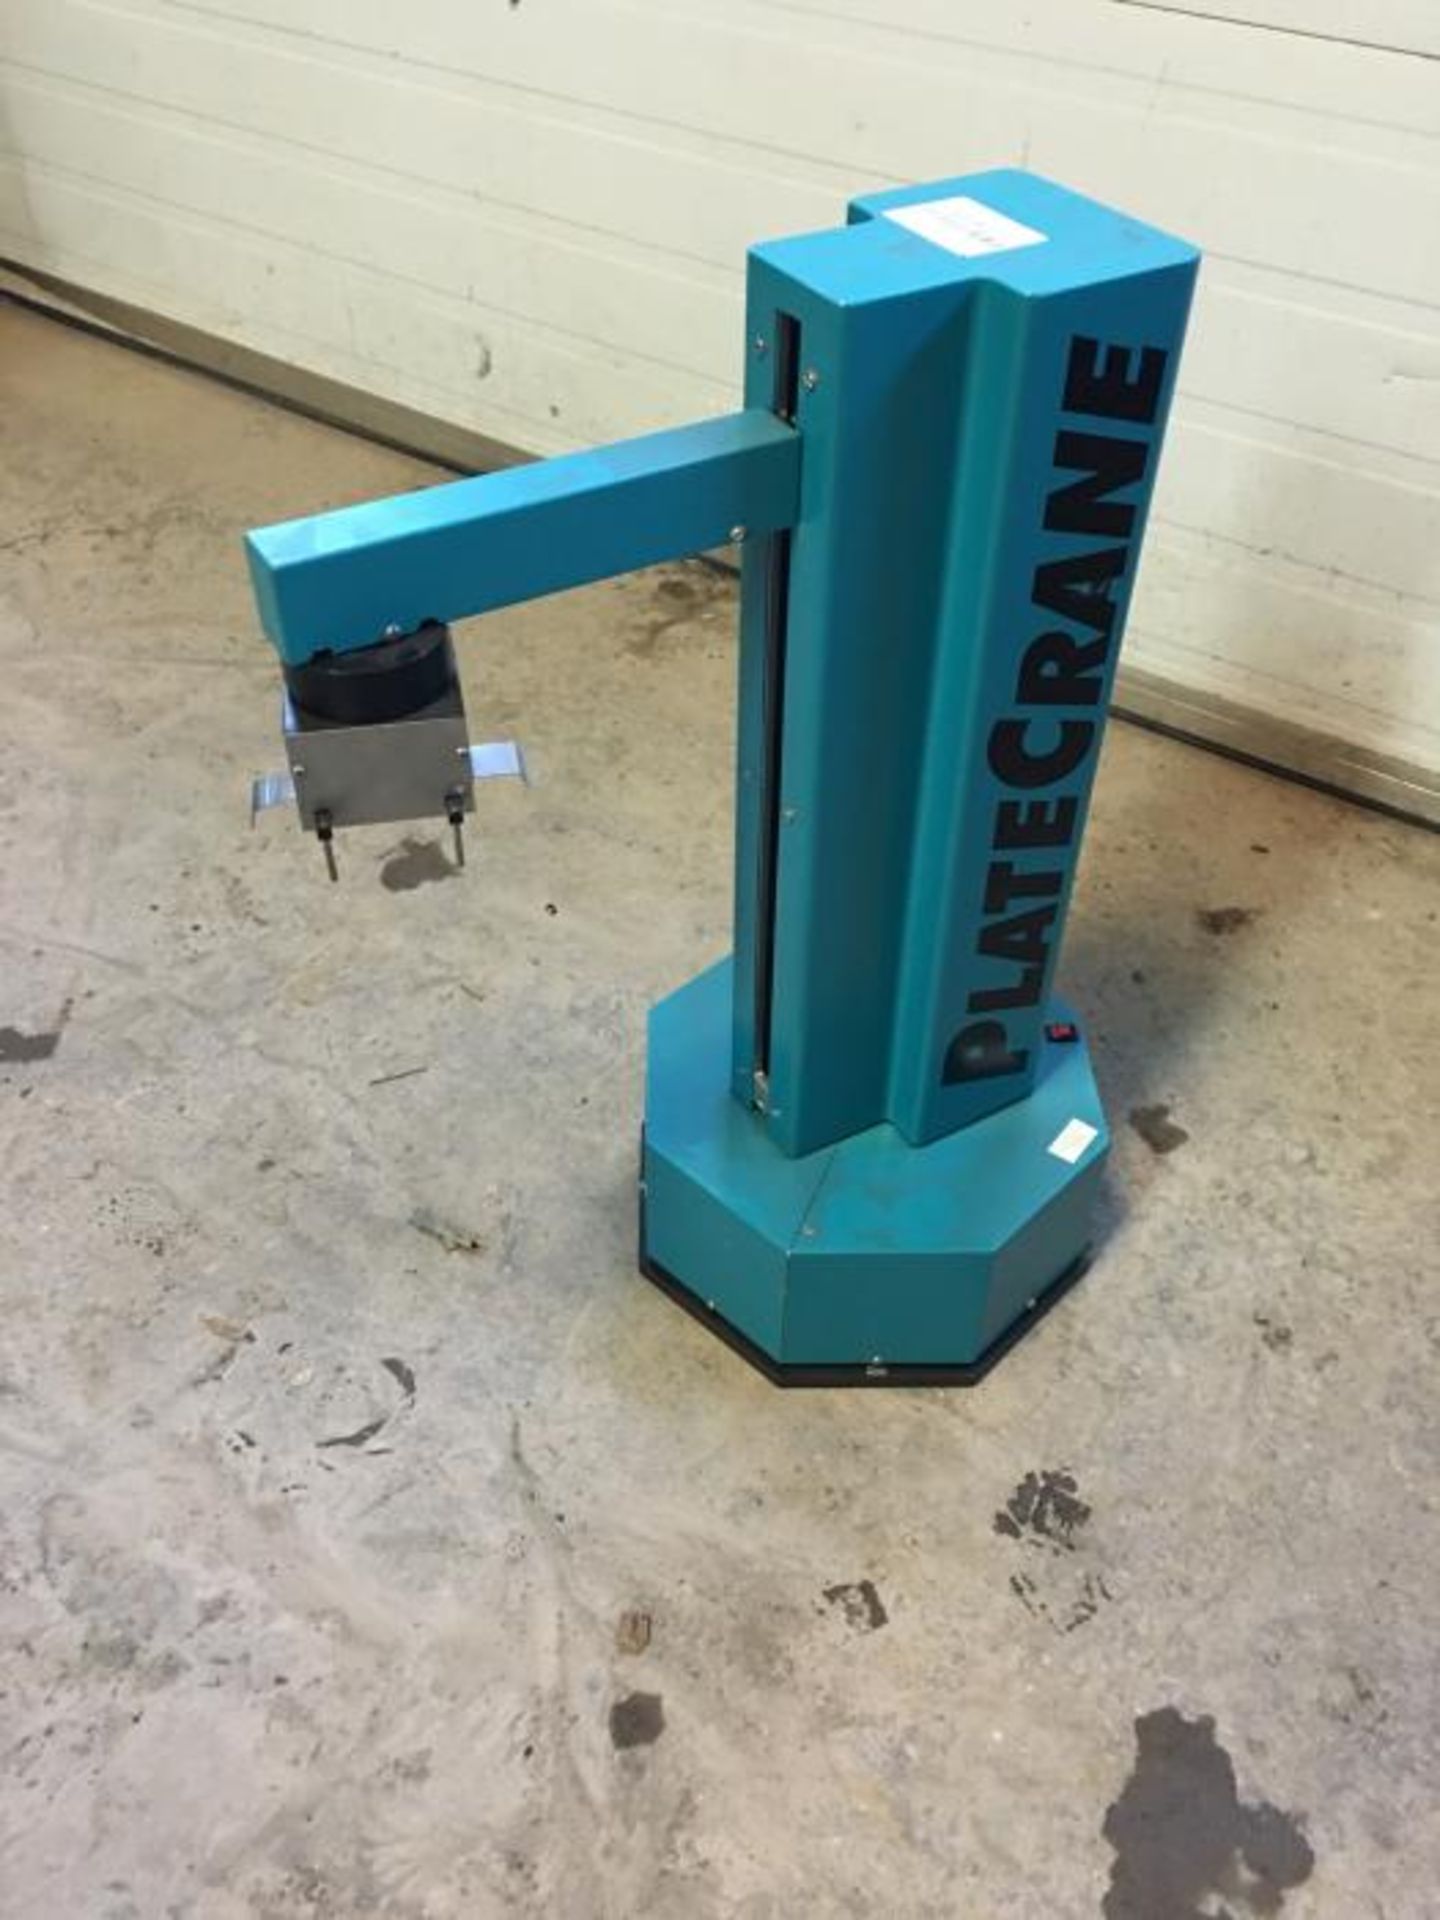 Hudson Microplate Plate Crane Robot - Robot hudson microplate plate crane